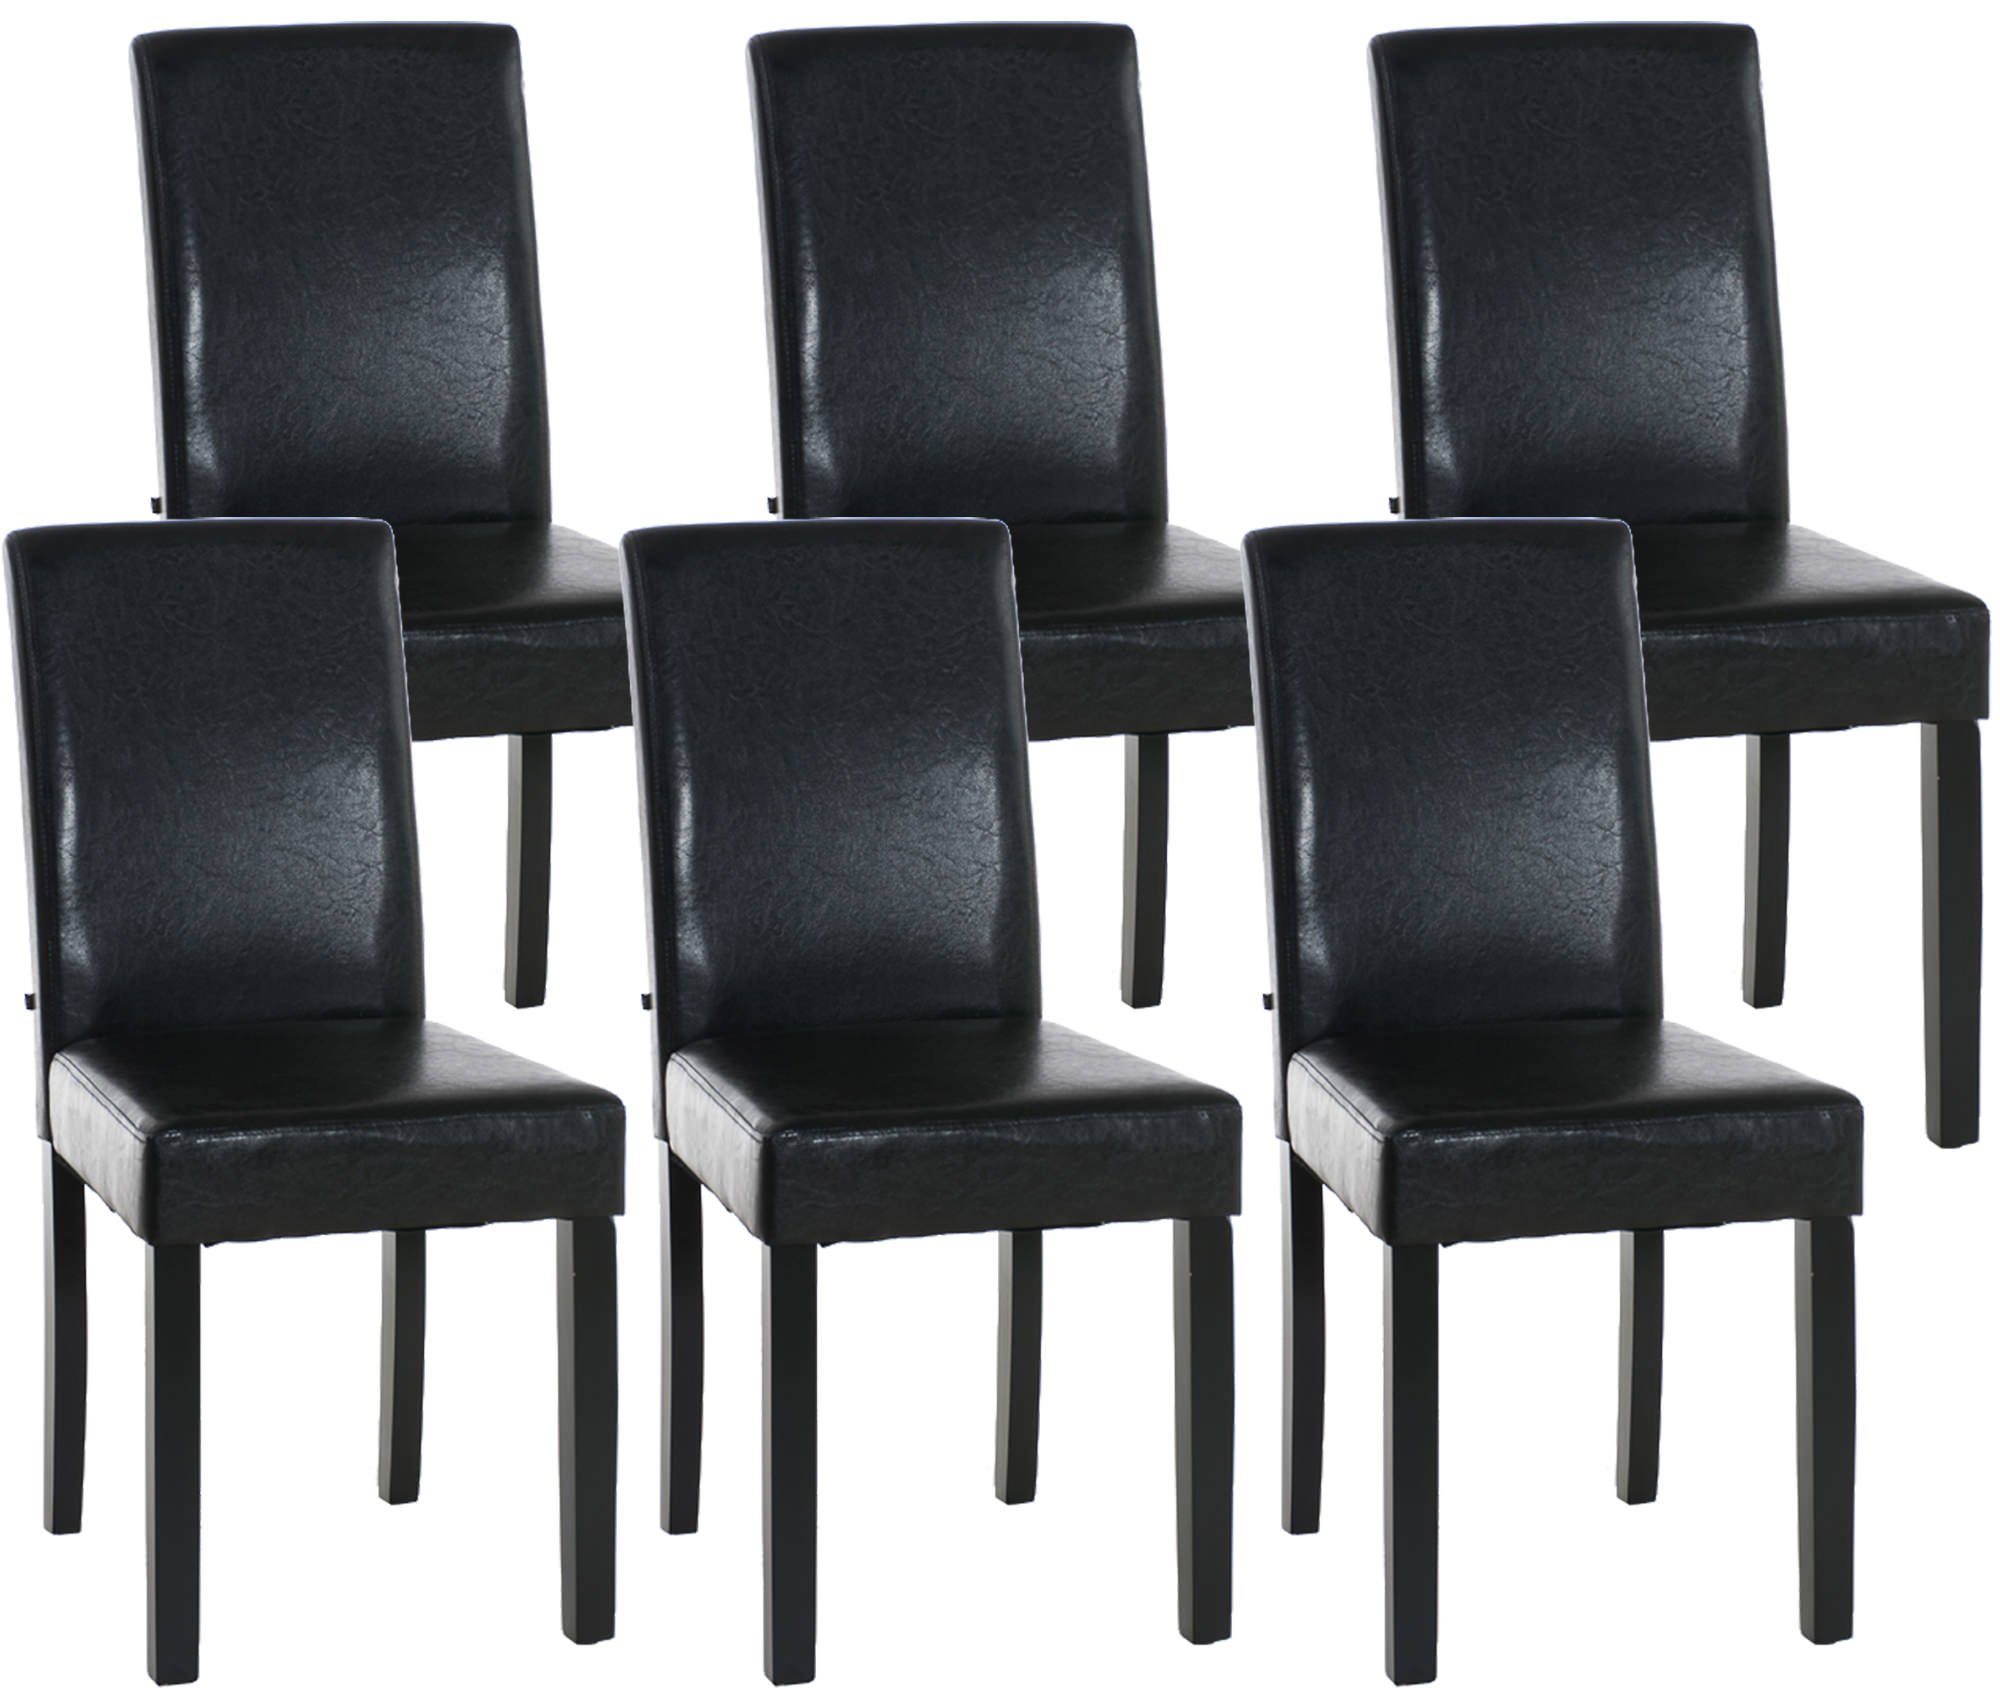 CLP Esszimmerstuhl Ina Kunstleder (6er Set), schwarz braun | Stühle